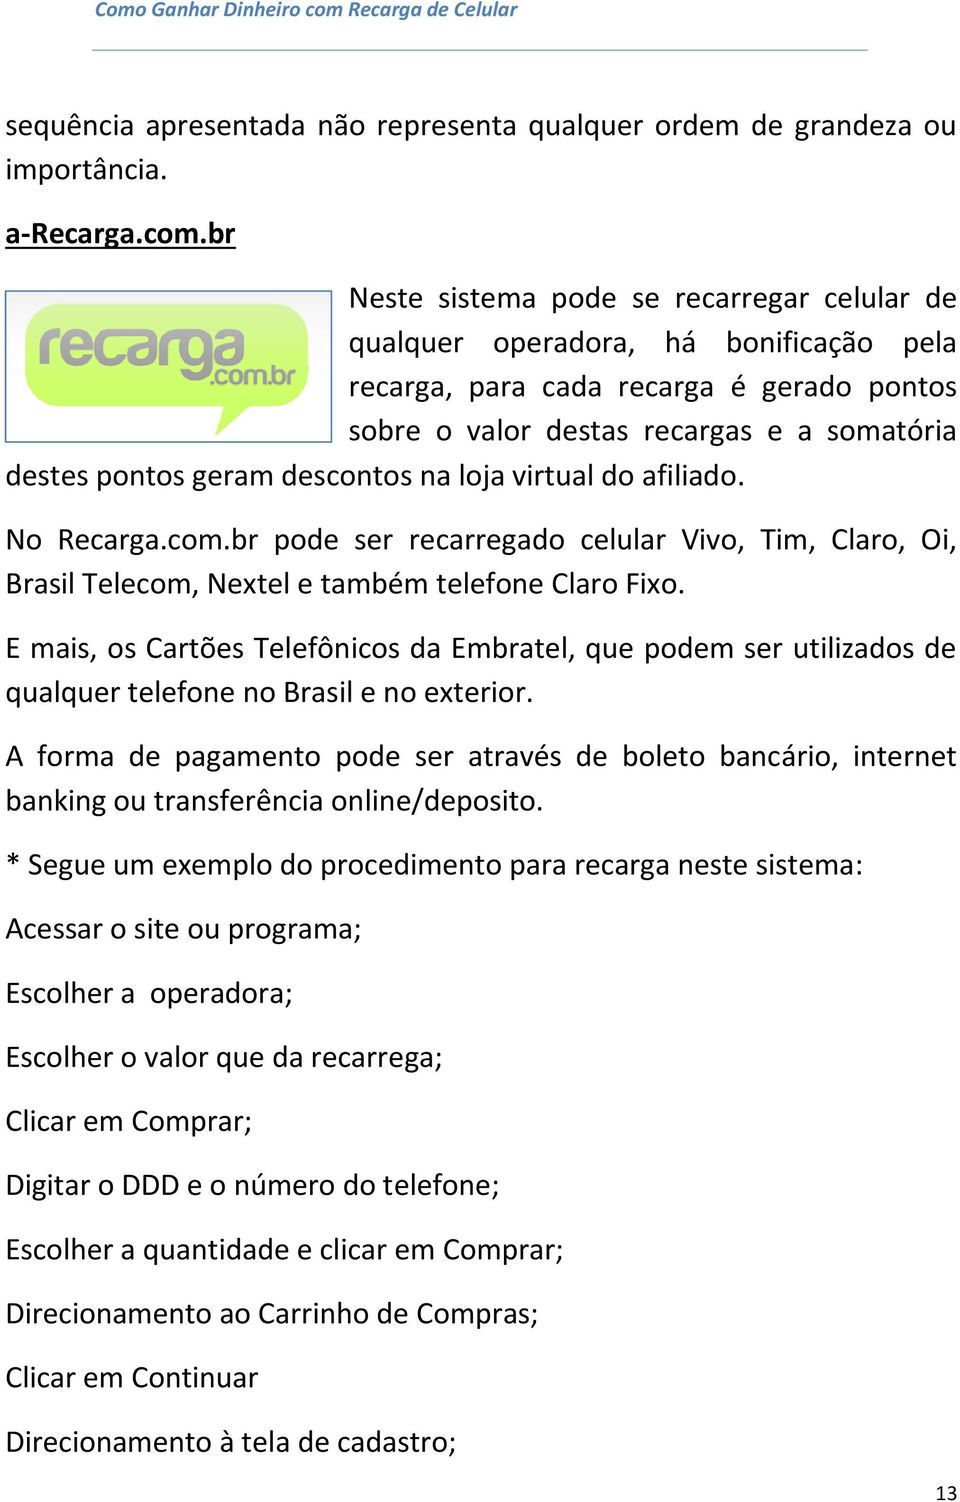 descontos na loja virtual do afiliado. No Recarga.com.br pode ser recarregado celular Vivo, Tim, Claro, Oi, Brasil Telecom, Nextel e também telefone Claro Fixo.